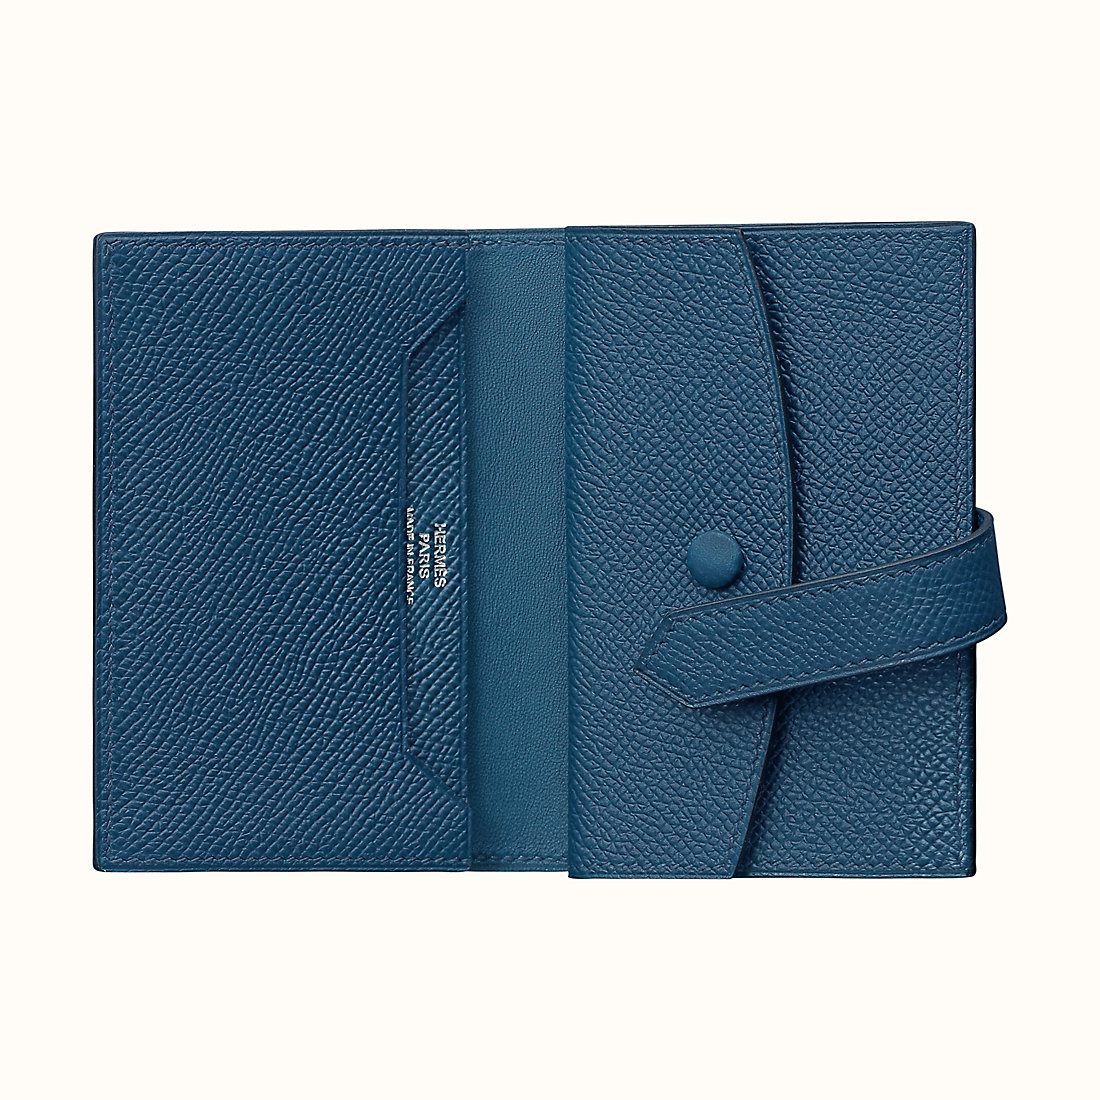 臺北市愛馬仕短錢包價格及圖片 Hermes Bearn mini wallet CKS4 Deep Blue